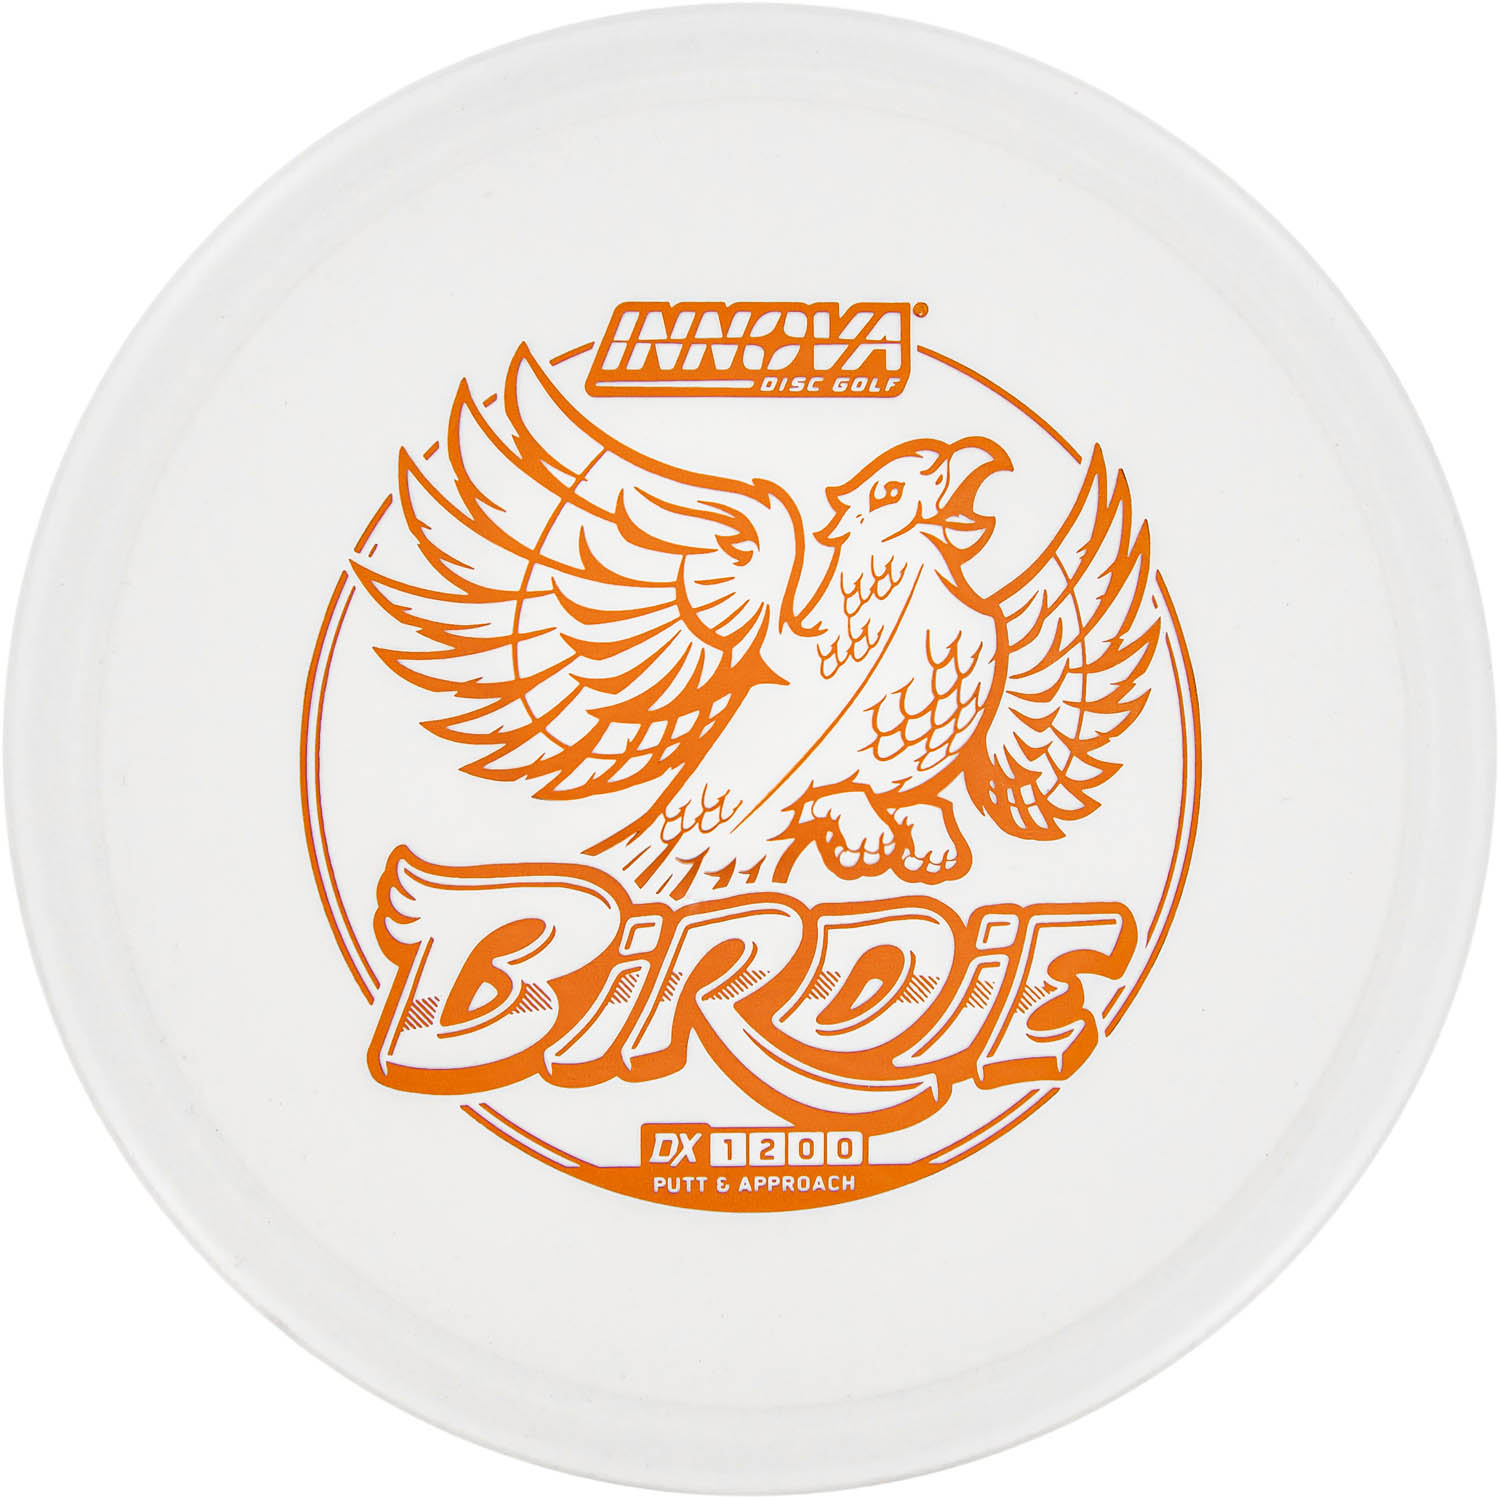 DX Birdie from Disc Golf United